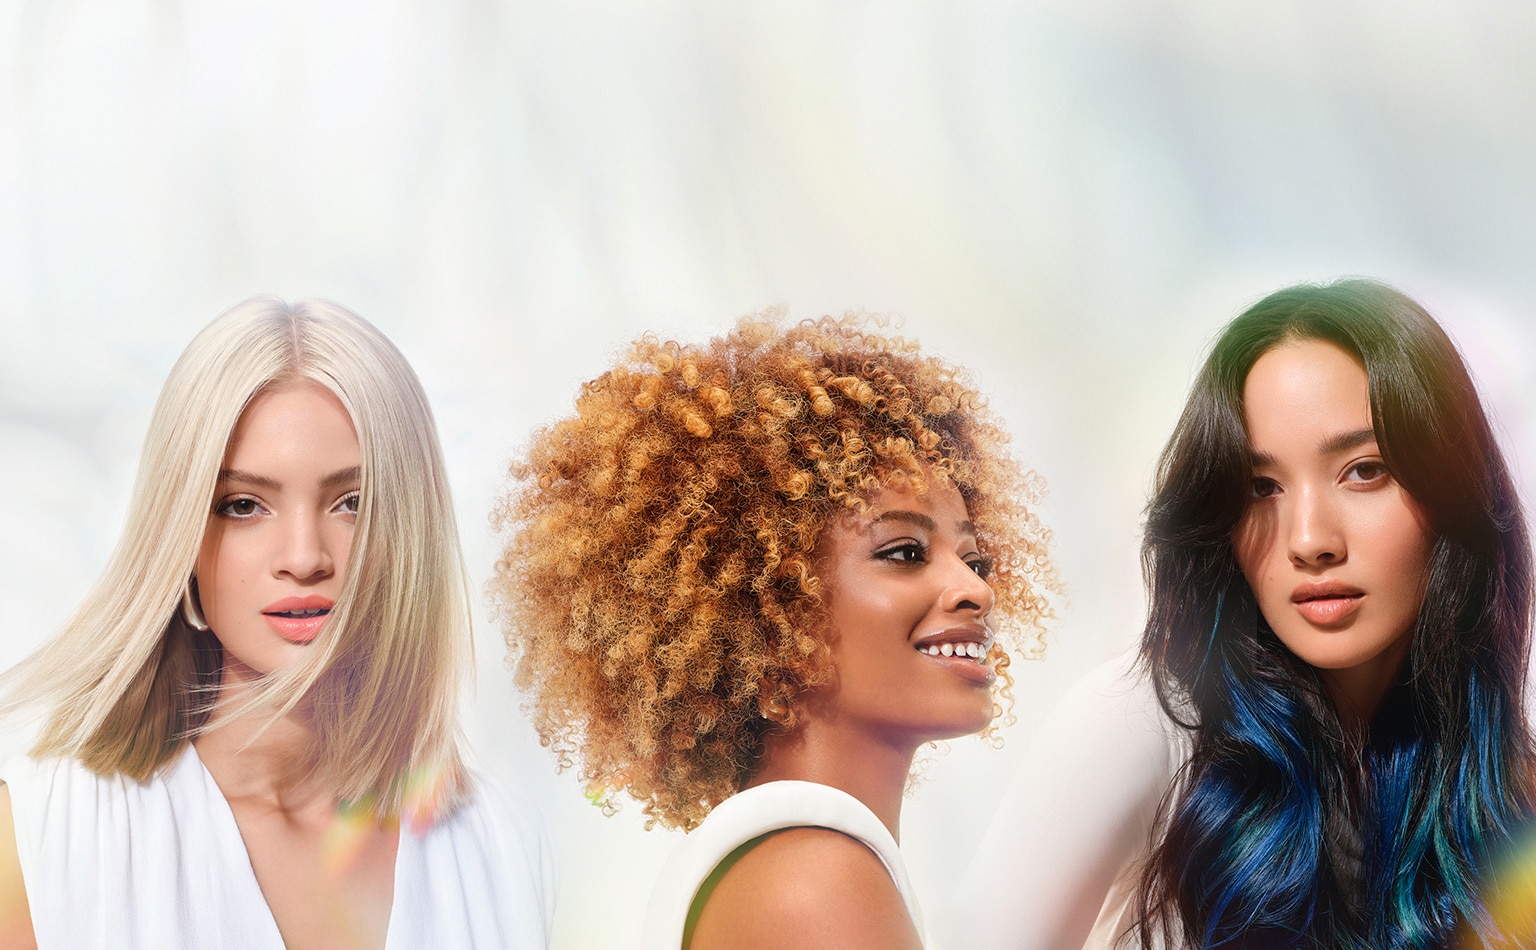 Des possibilités infinies de coloration pour cheveux personnalisés en fonction de votre humeur.